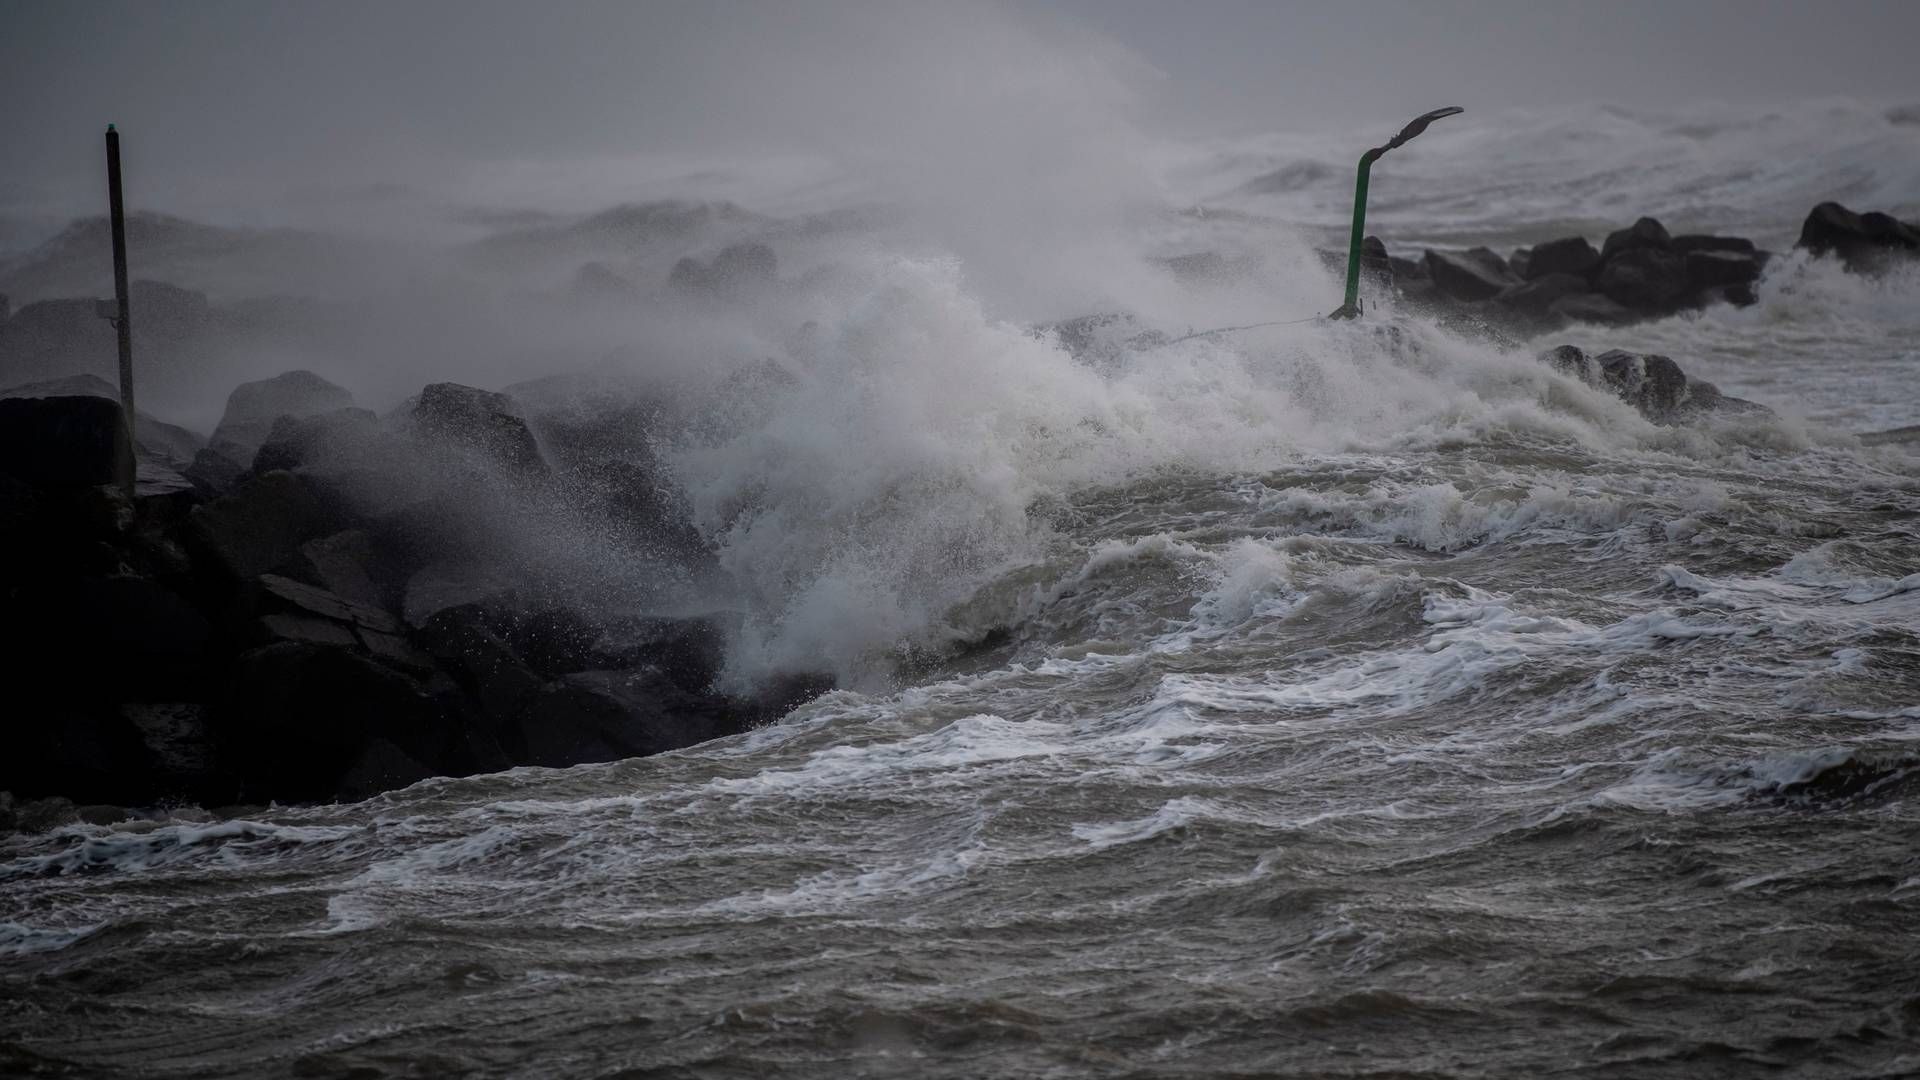 Stormen Otto har indtil videre medført færre skader end frygtet, oplyser Tryg og Topdanmark. | Foto: Morten Stricker/Jysk Fynske Medier/Ritzau Scanpix